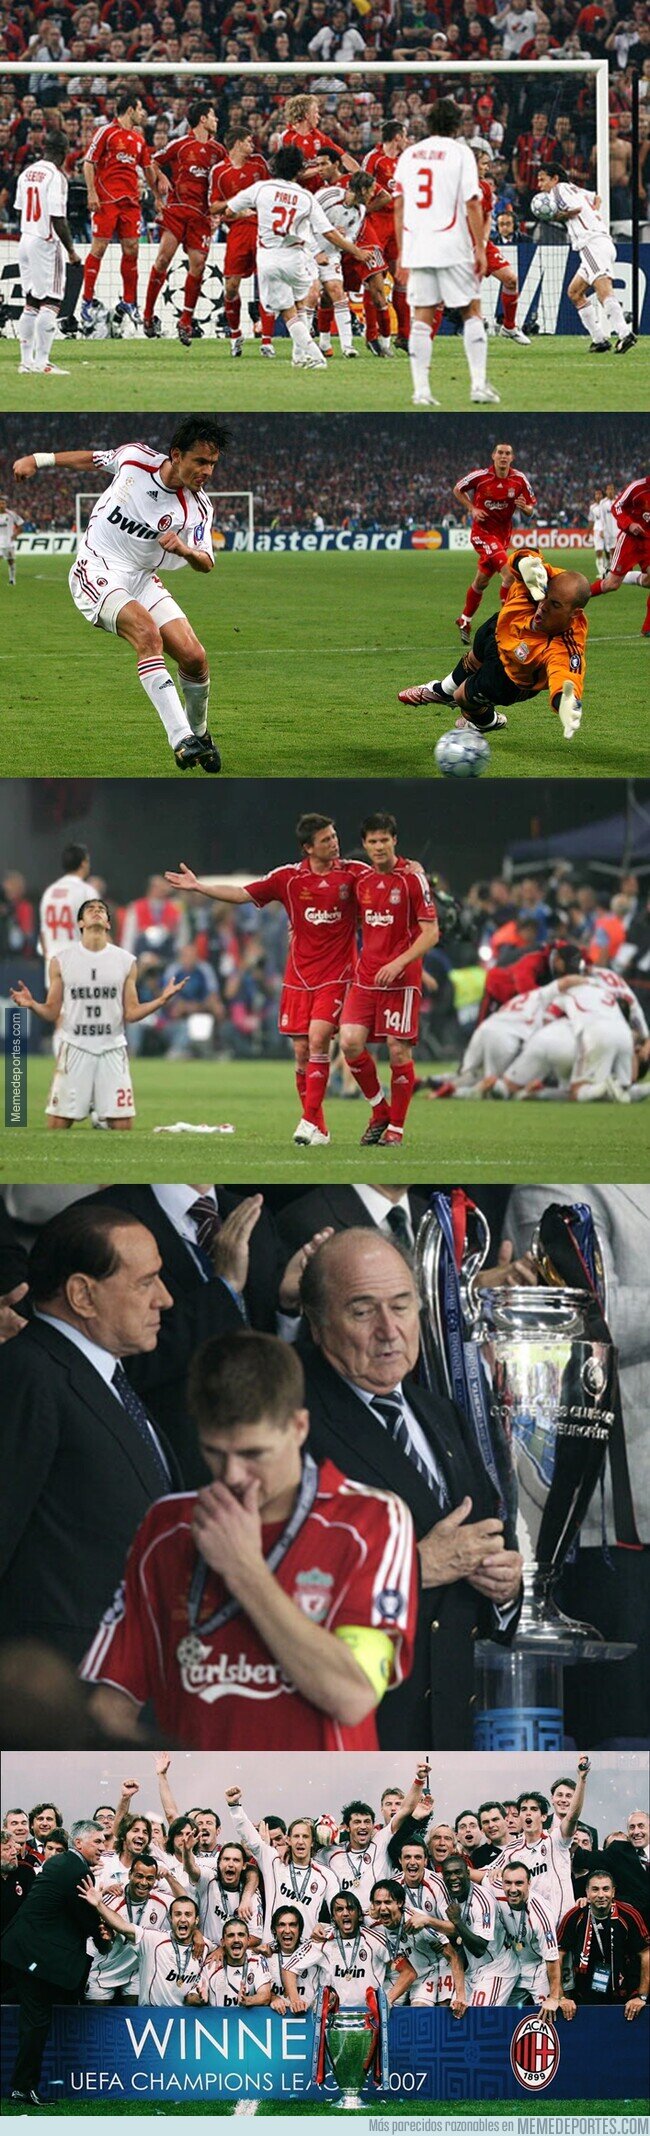 1143019 - La última vez que se enfrentaron Liverpool y Milan fue hace 14 años, en la final de 2007